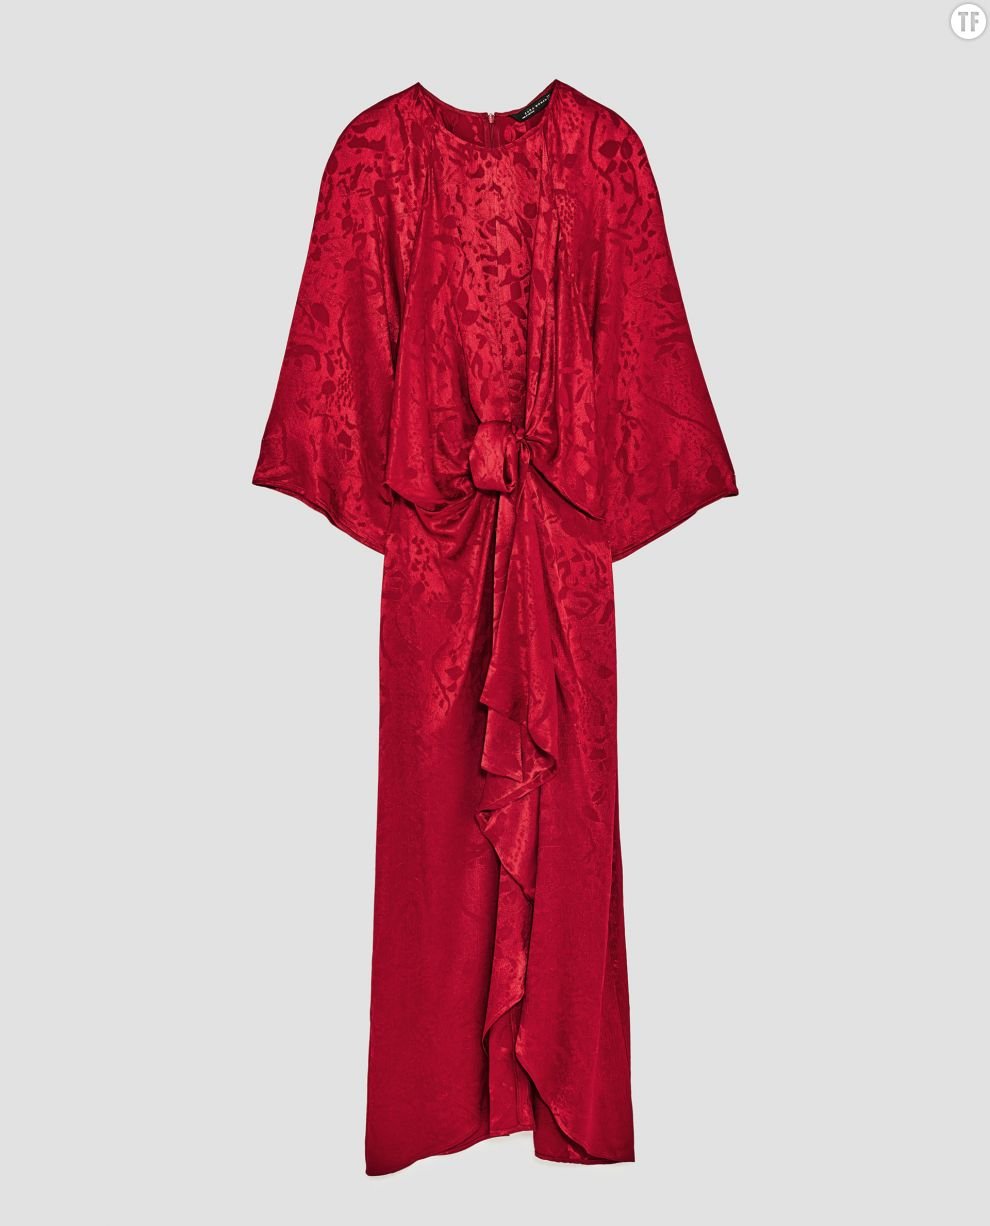     Robe rouge en jacquard Zara, 59,95 euros  